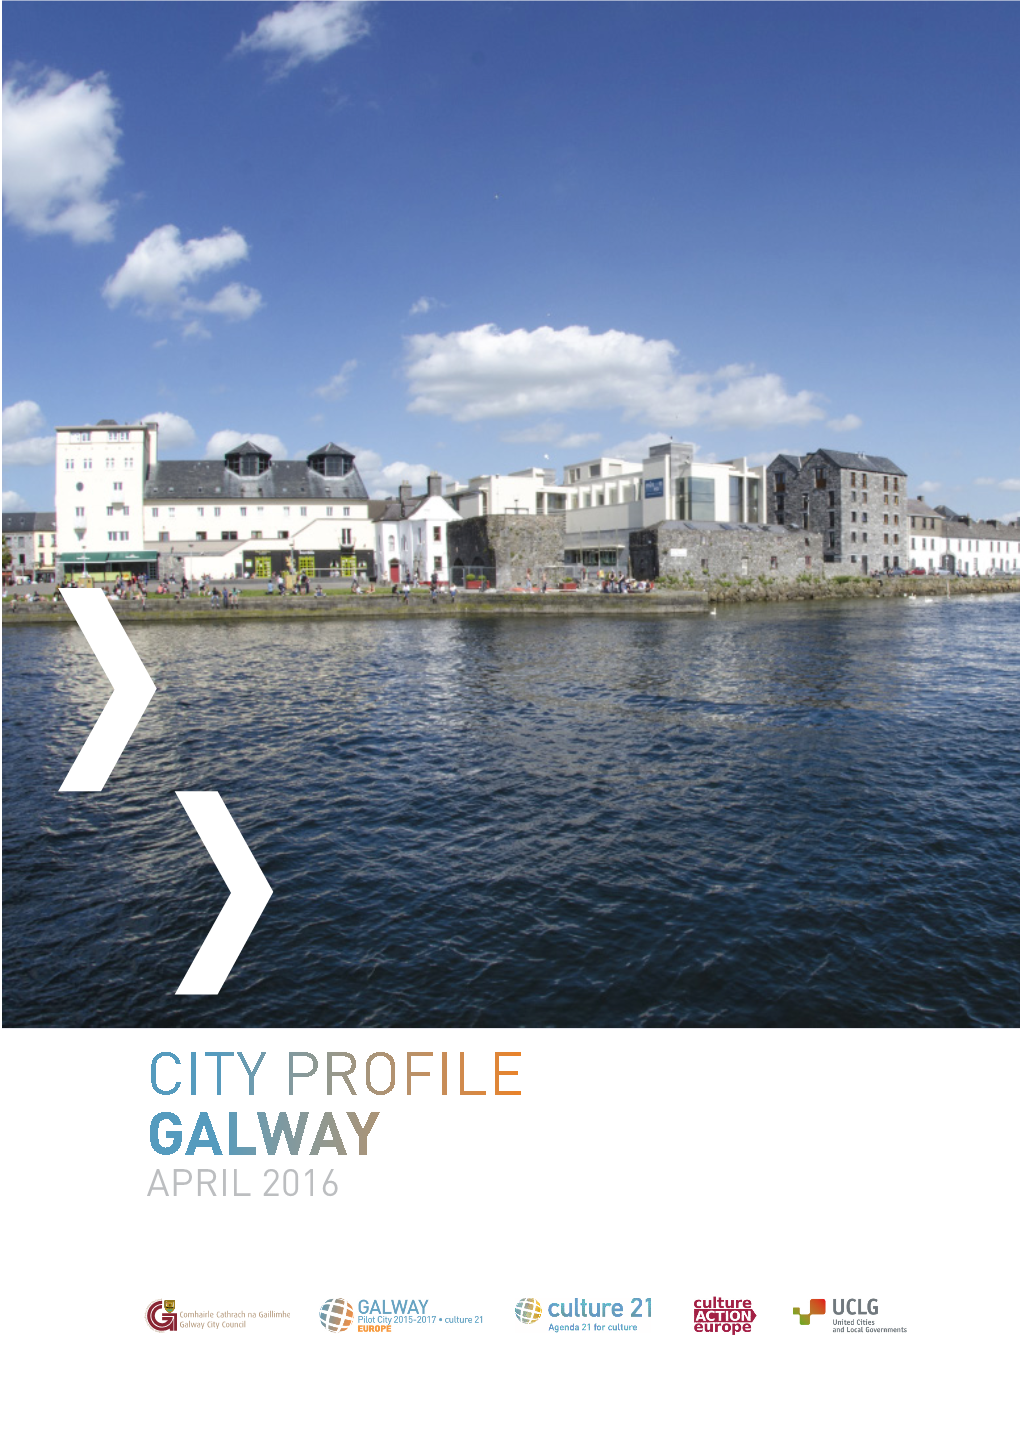 City Profile Galway April 2016 City Description